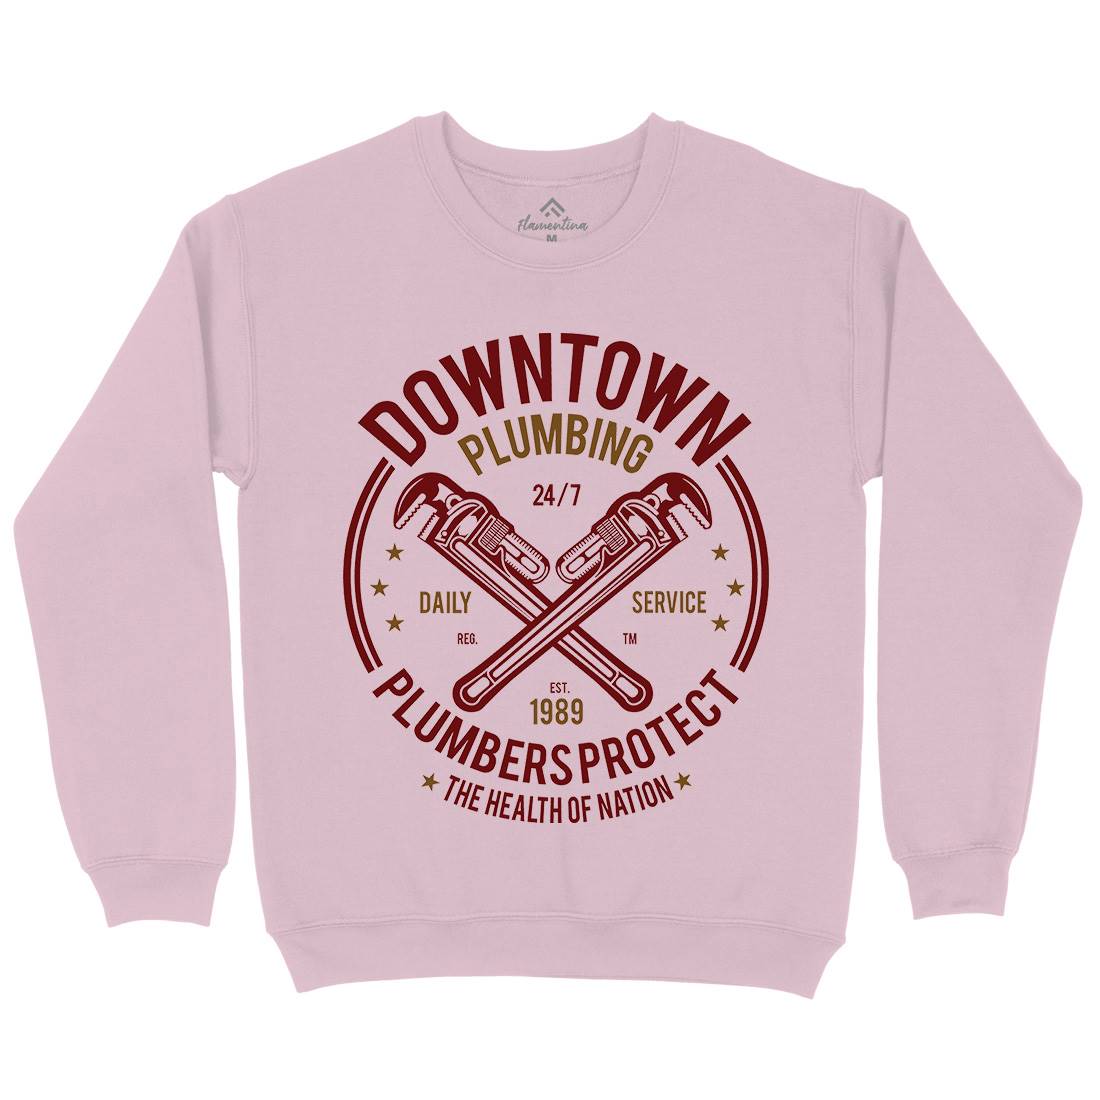 Downtown Plumbing Kids Crew Neck Sweatshirt Work A046